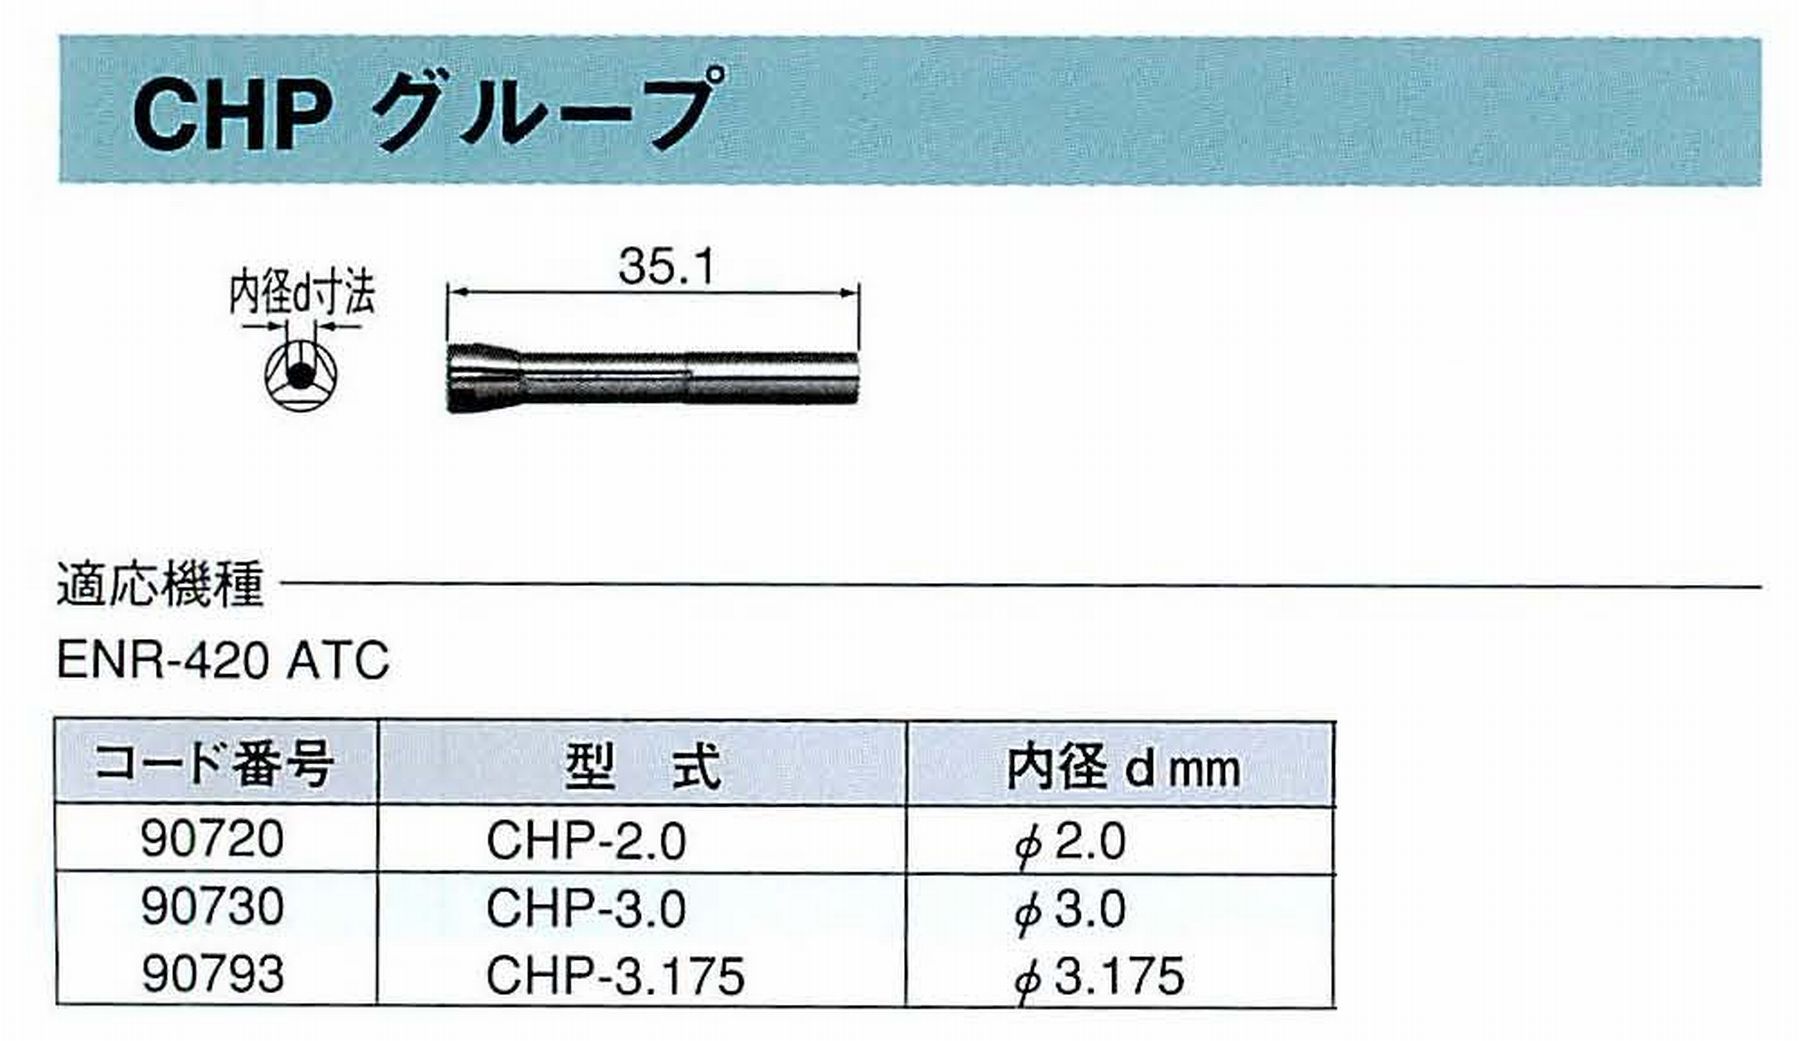 ナカニシ/NAKANISHI コレットチャック コード番号 90720 型式 CHP-2.0 内径:Φ2.0